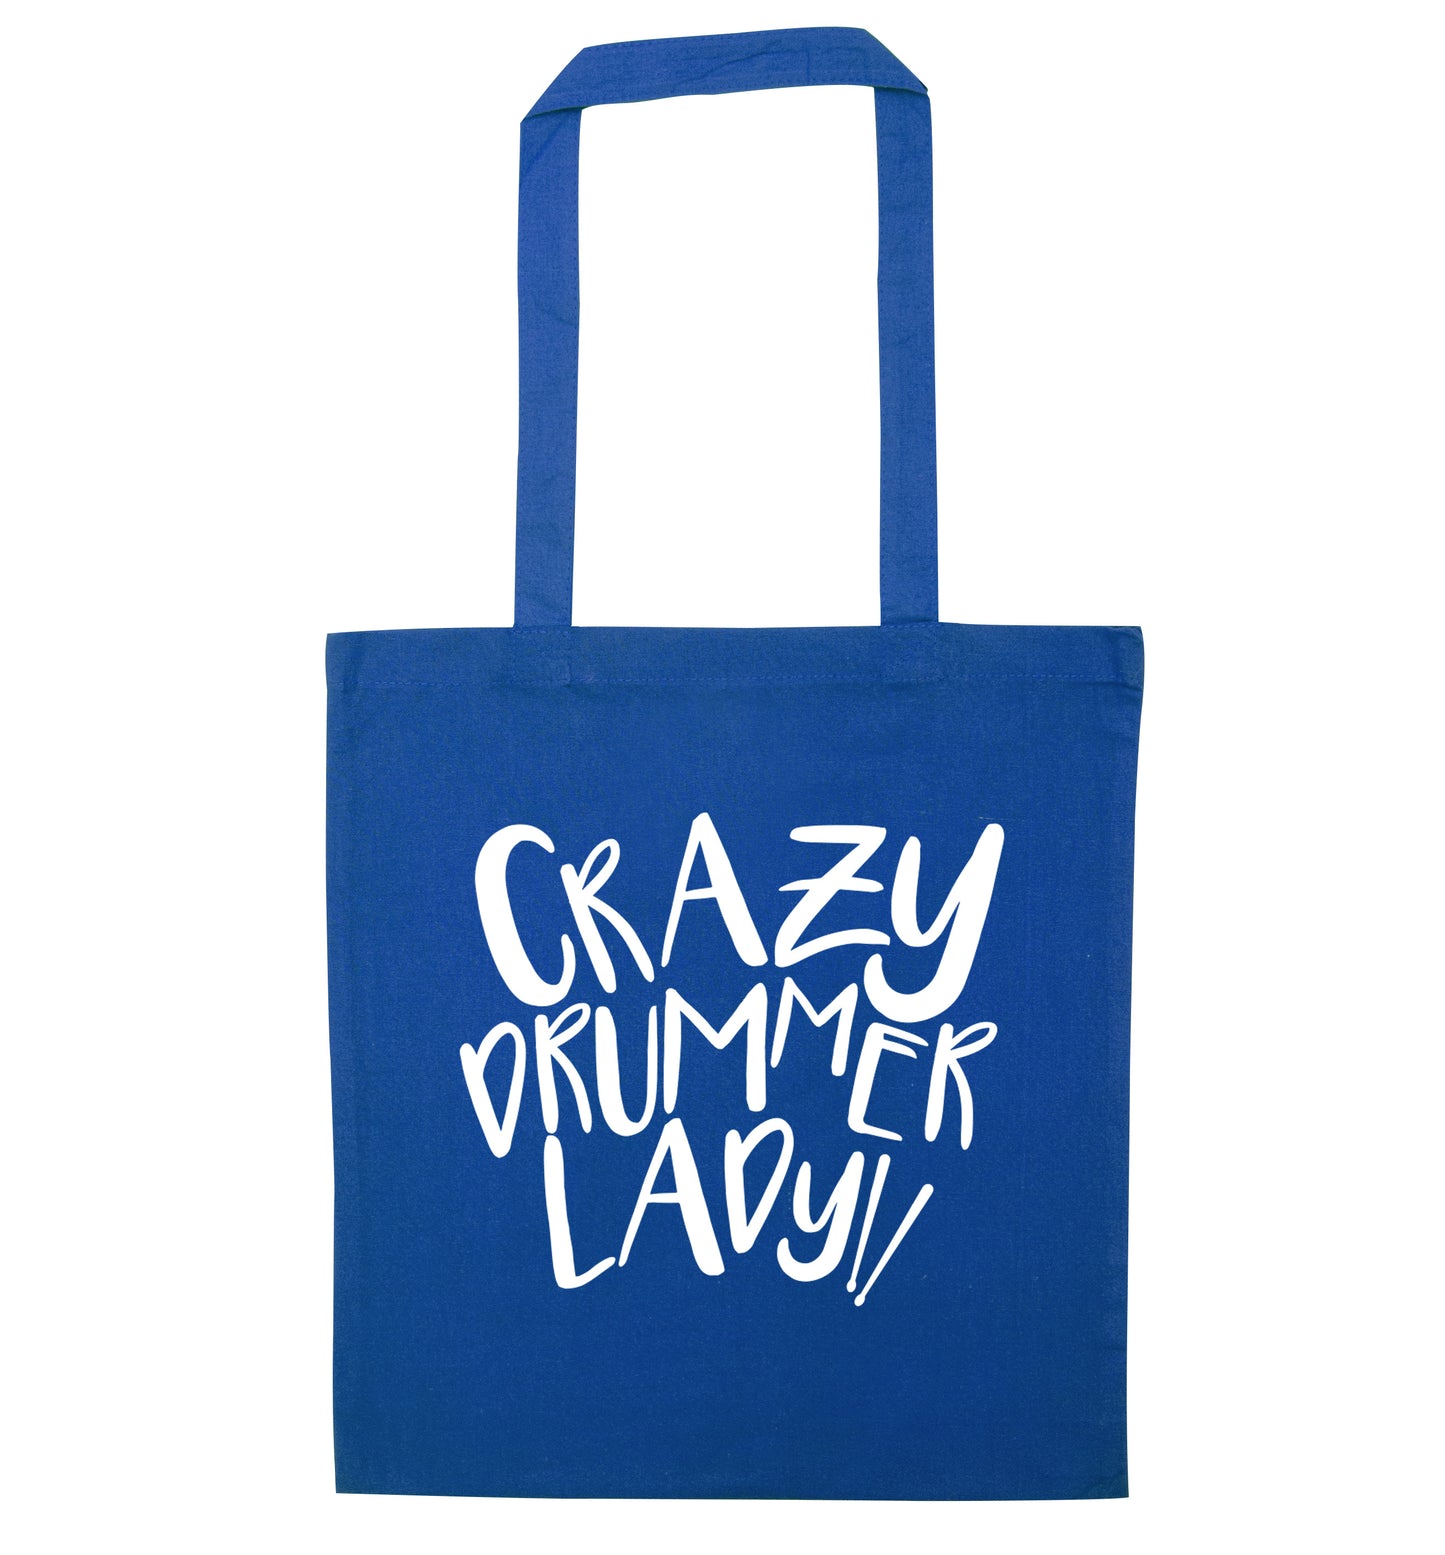 Crazy drummer lady blue tote bag